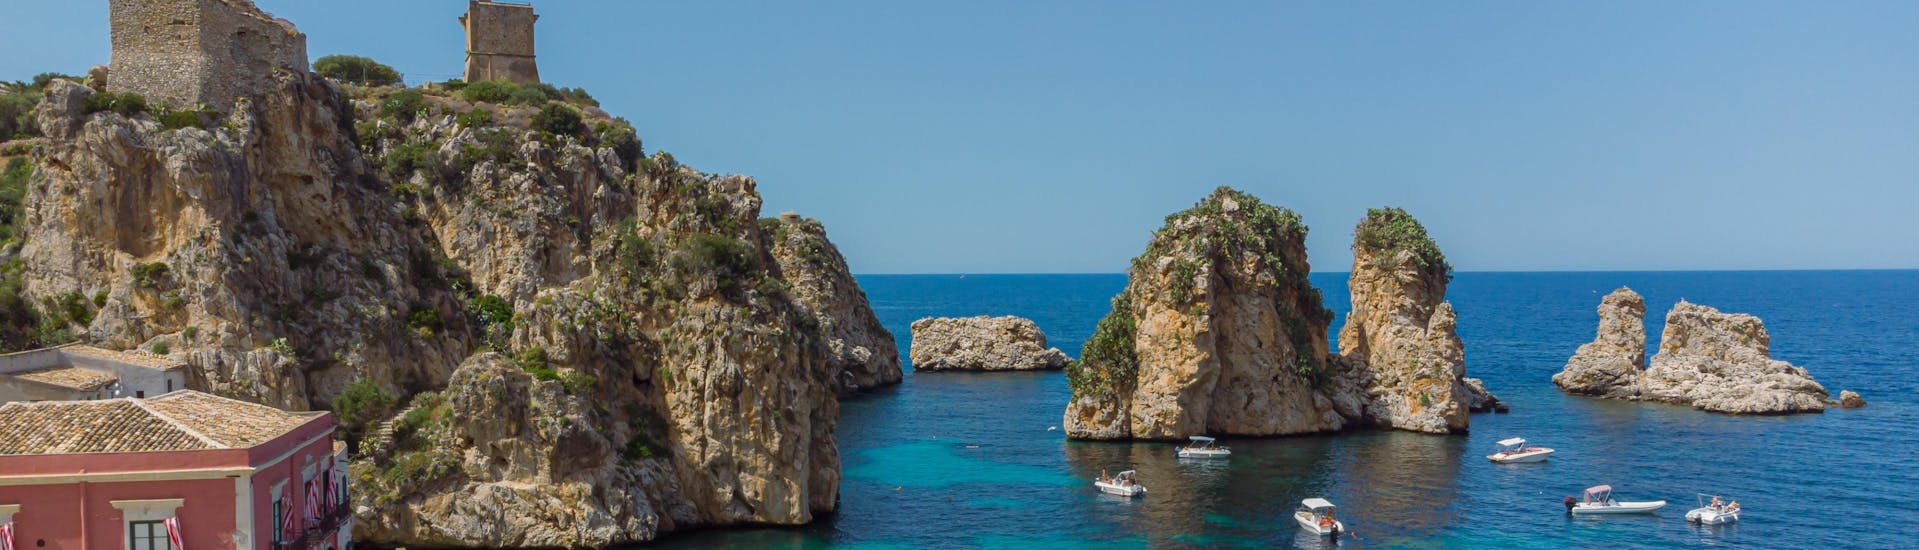 Vue magnifique sur les Faraglioni de Scopello, une destination populaire pour les balades en bateau en Sicile.